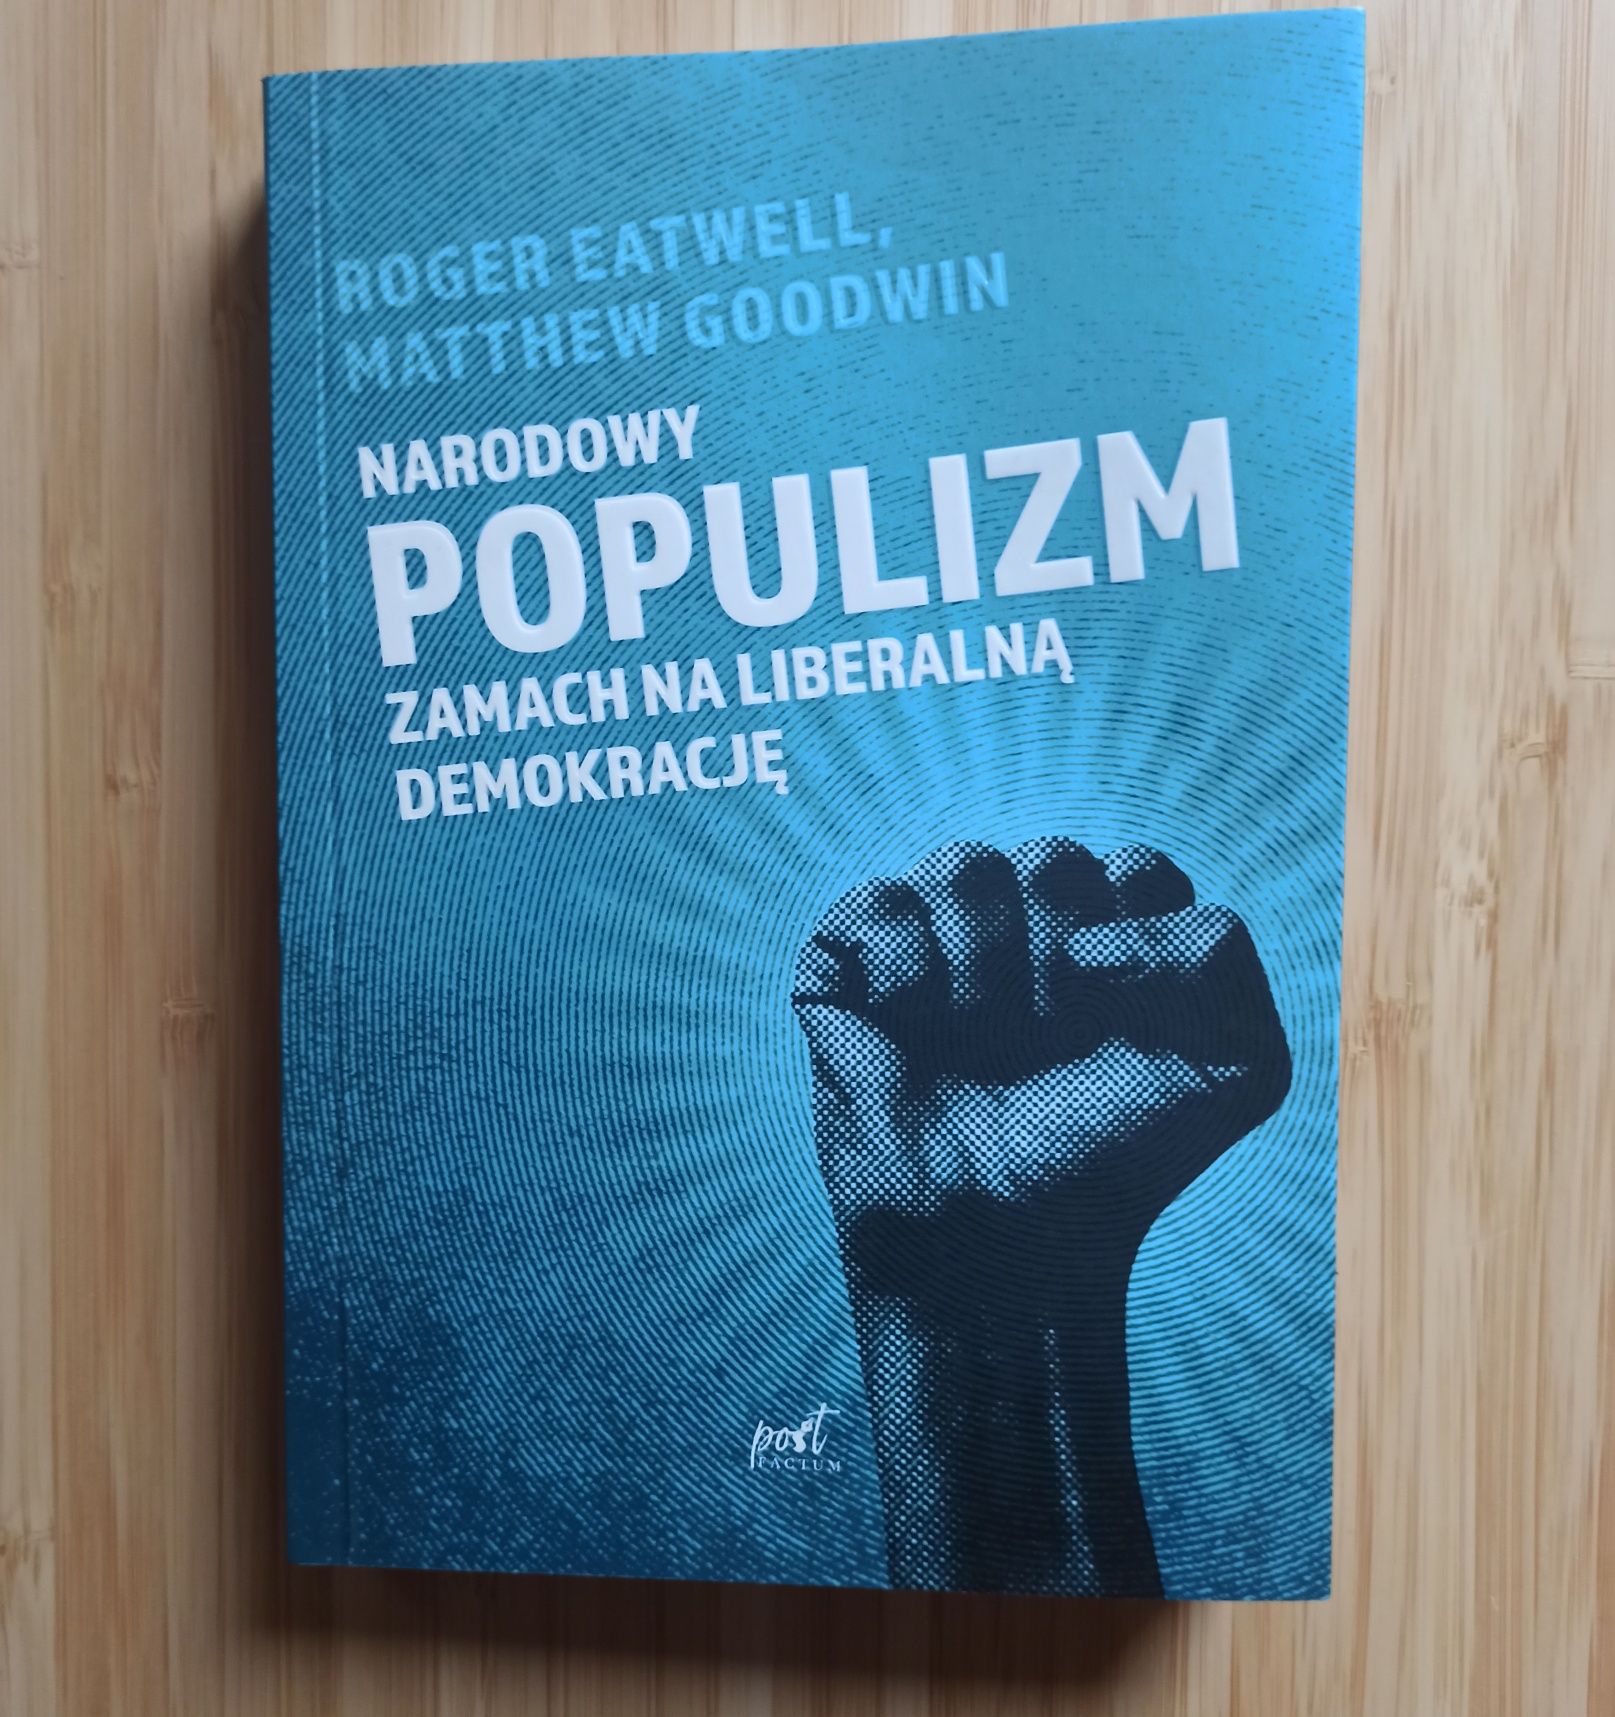 Narodowy populizm. Zamach na liberalną demokrację / Eatwell